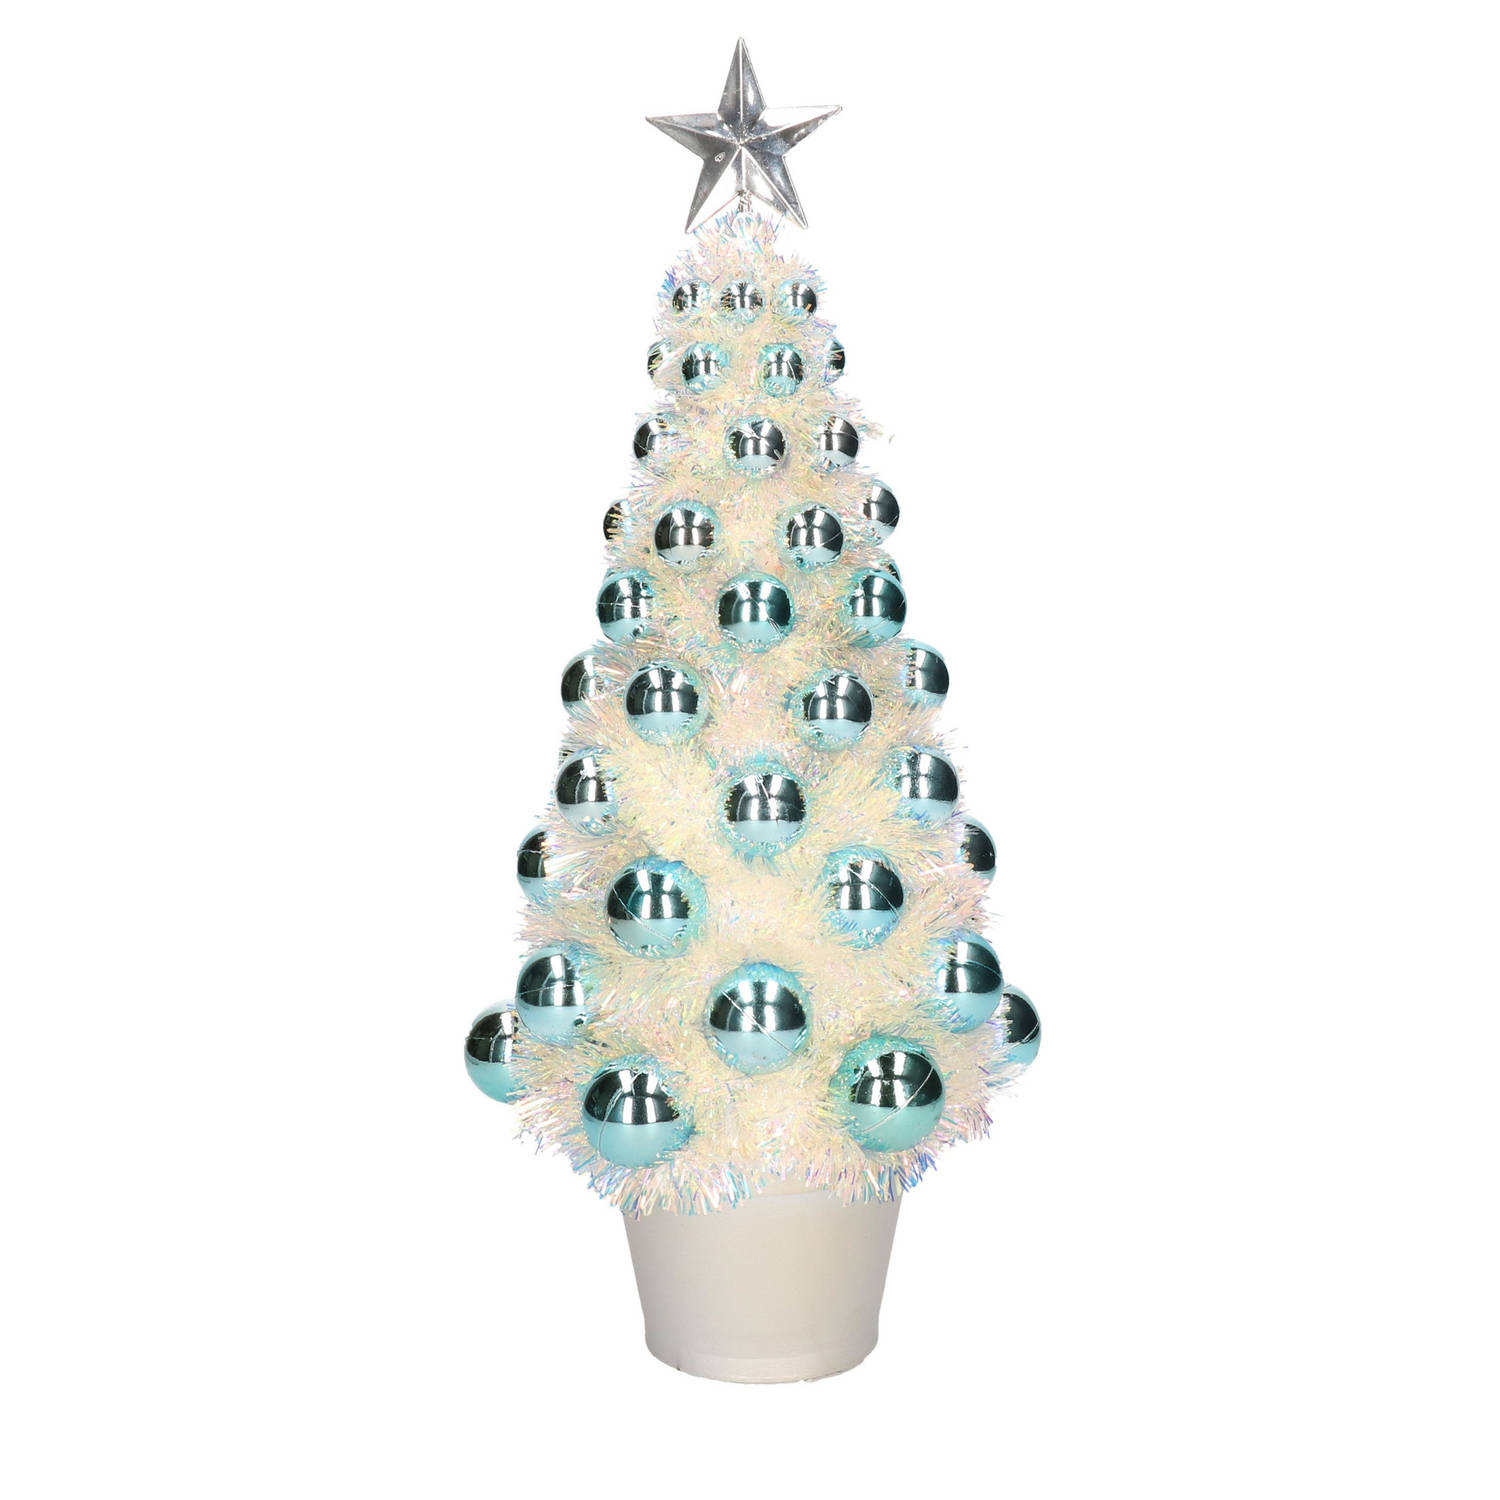 Gehoorzaamheid Commandant converteerbaar Complete mini kunst kerstboom / kunstboom blauw met lichtjes 40 cm -  Kunstkerstboom | Blokker